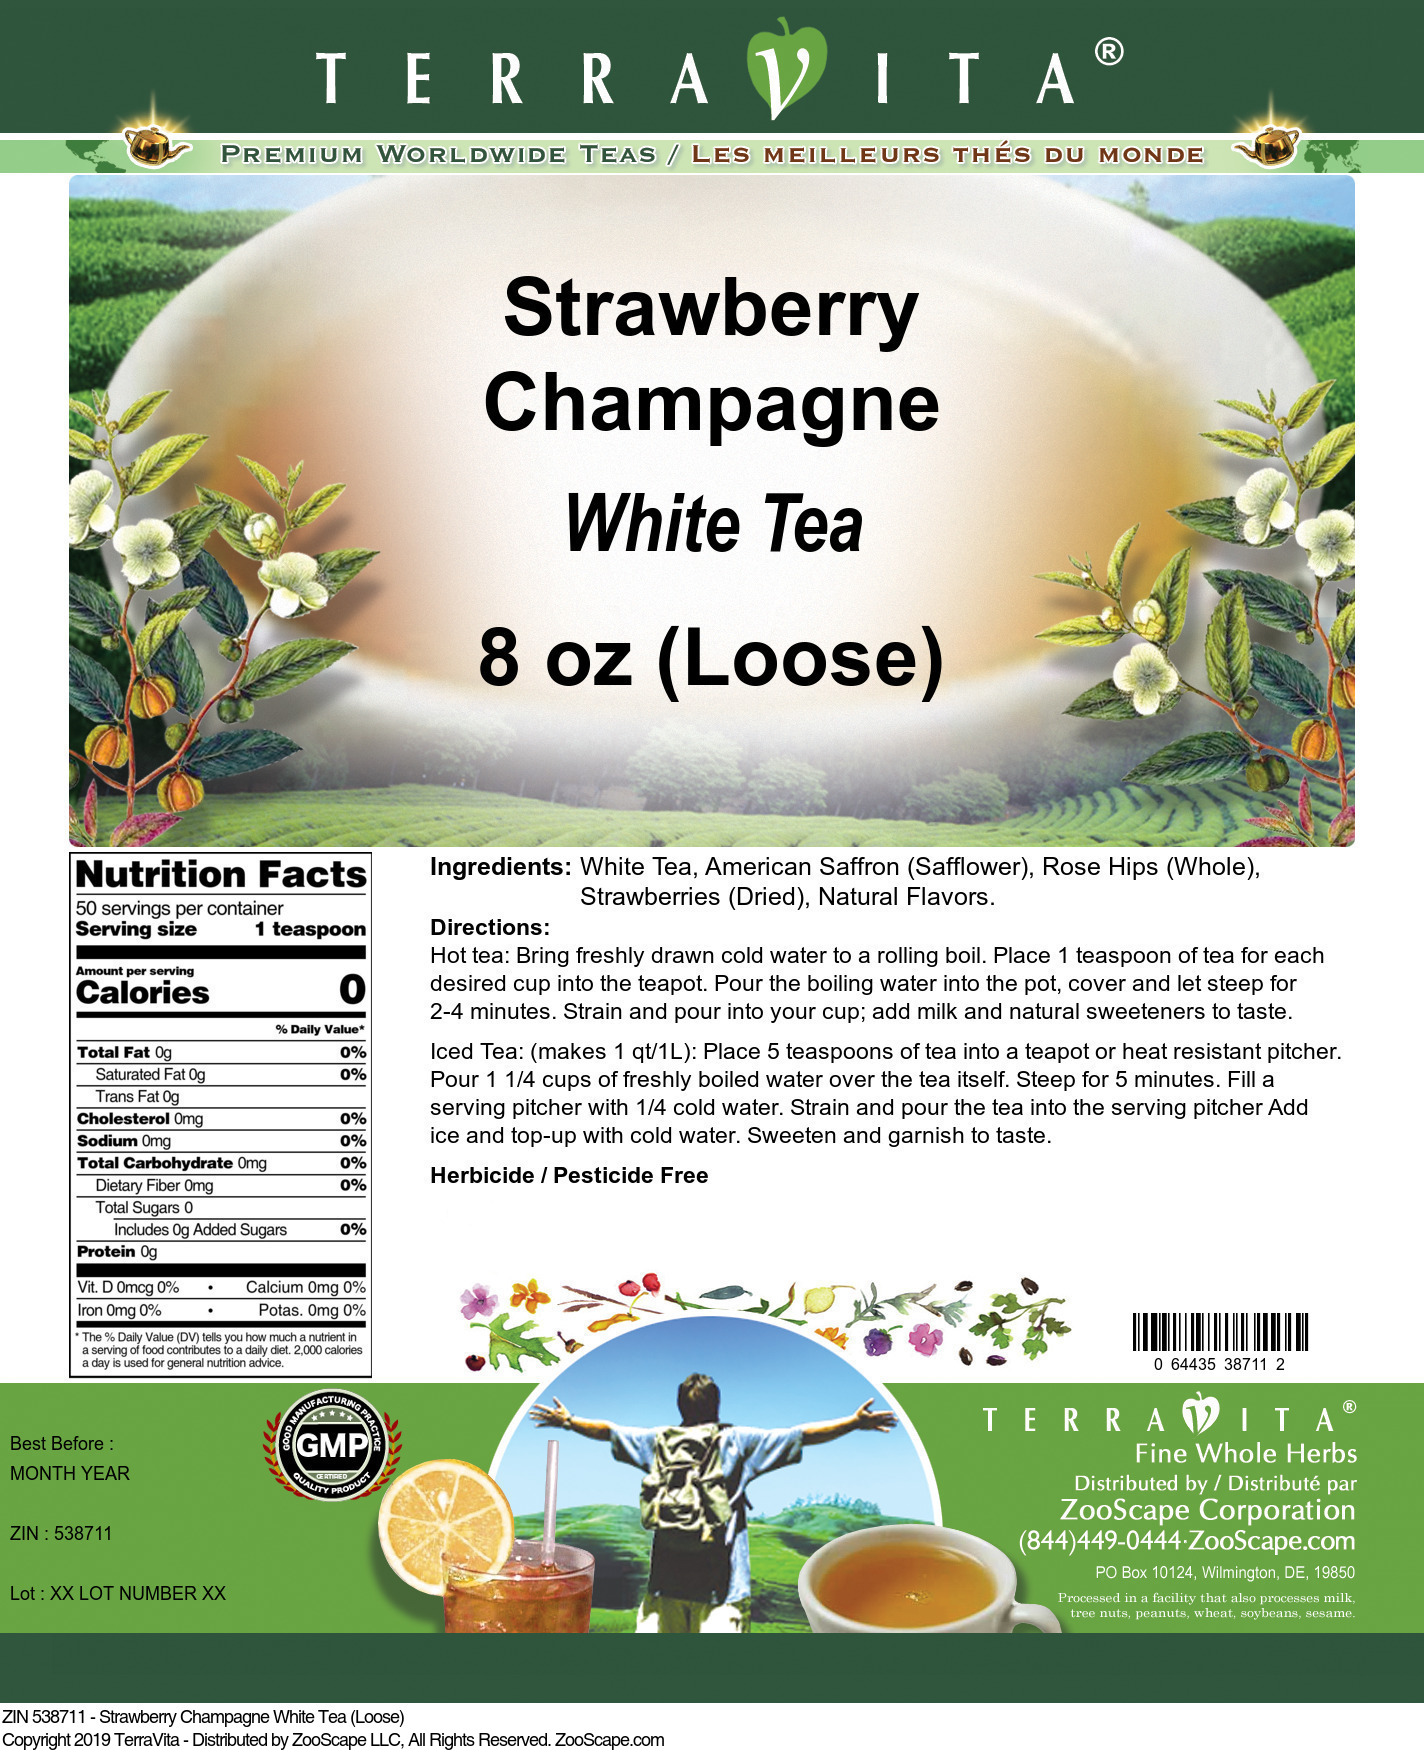 Strawberry Champagne White Tea (Loose) - Label